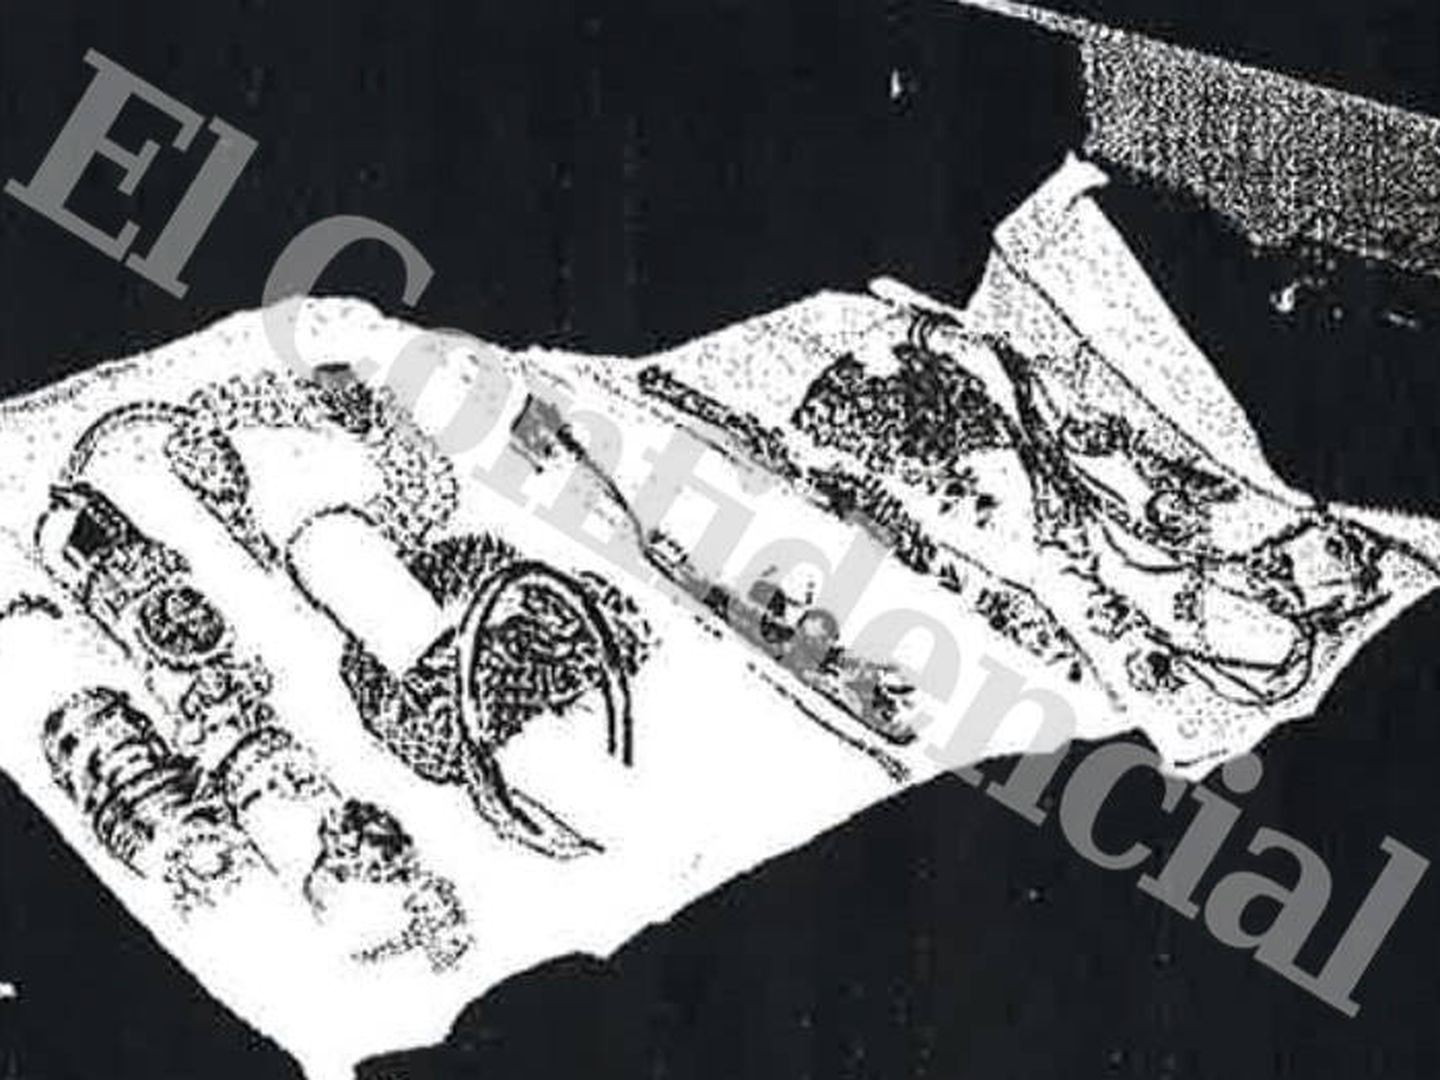 Fotografía general de una manta joyero con diversas piezas de joyería. (EC)